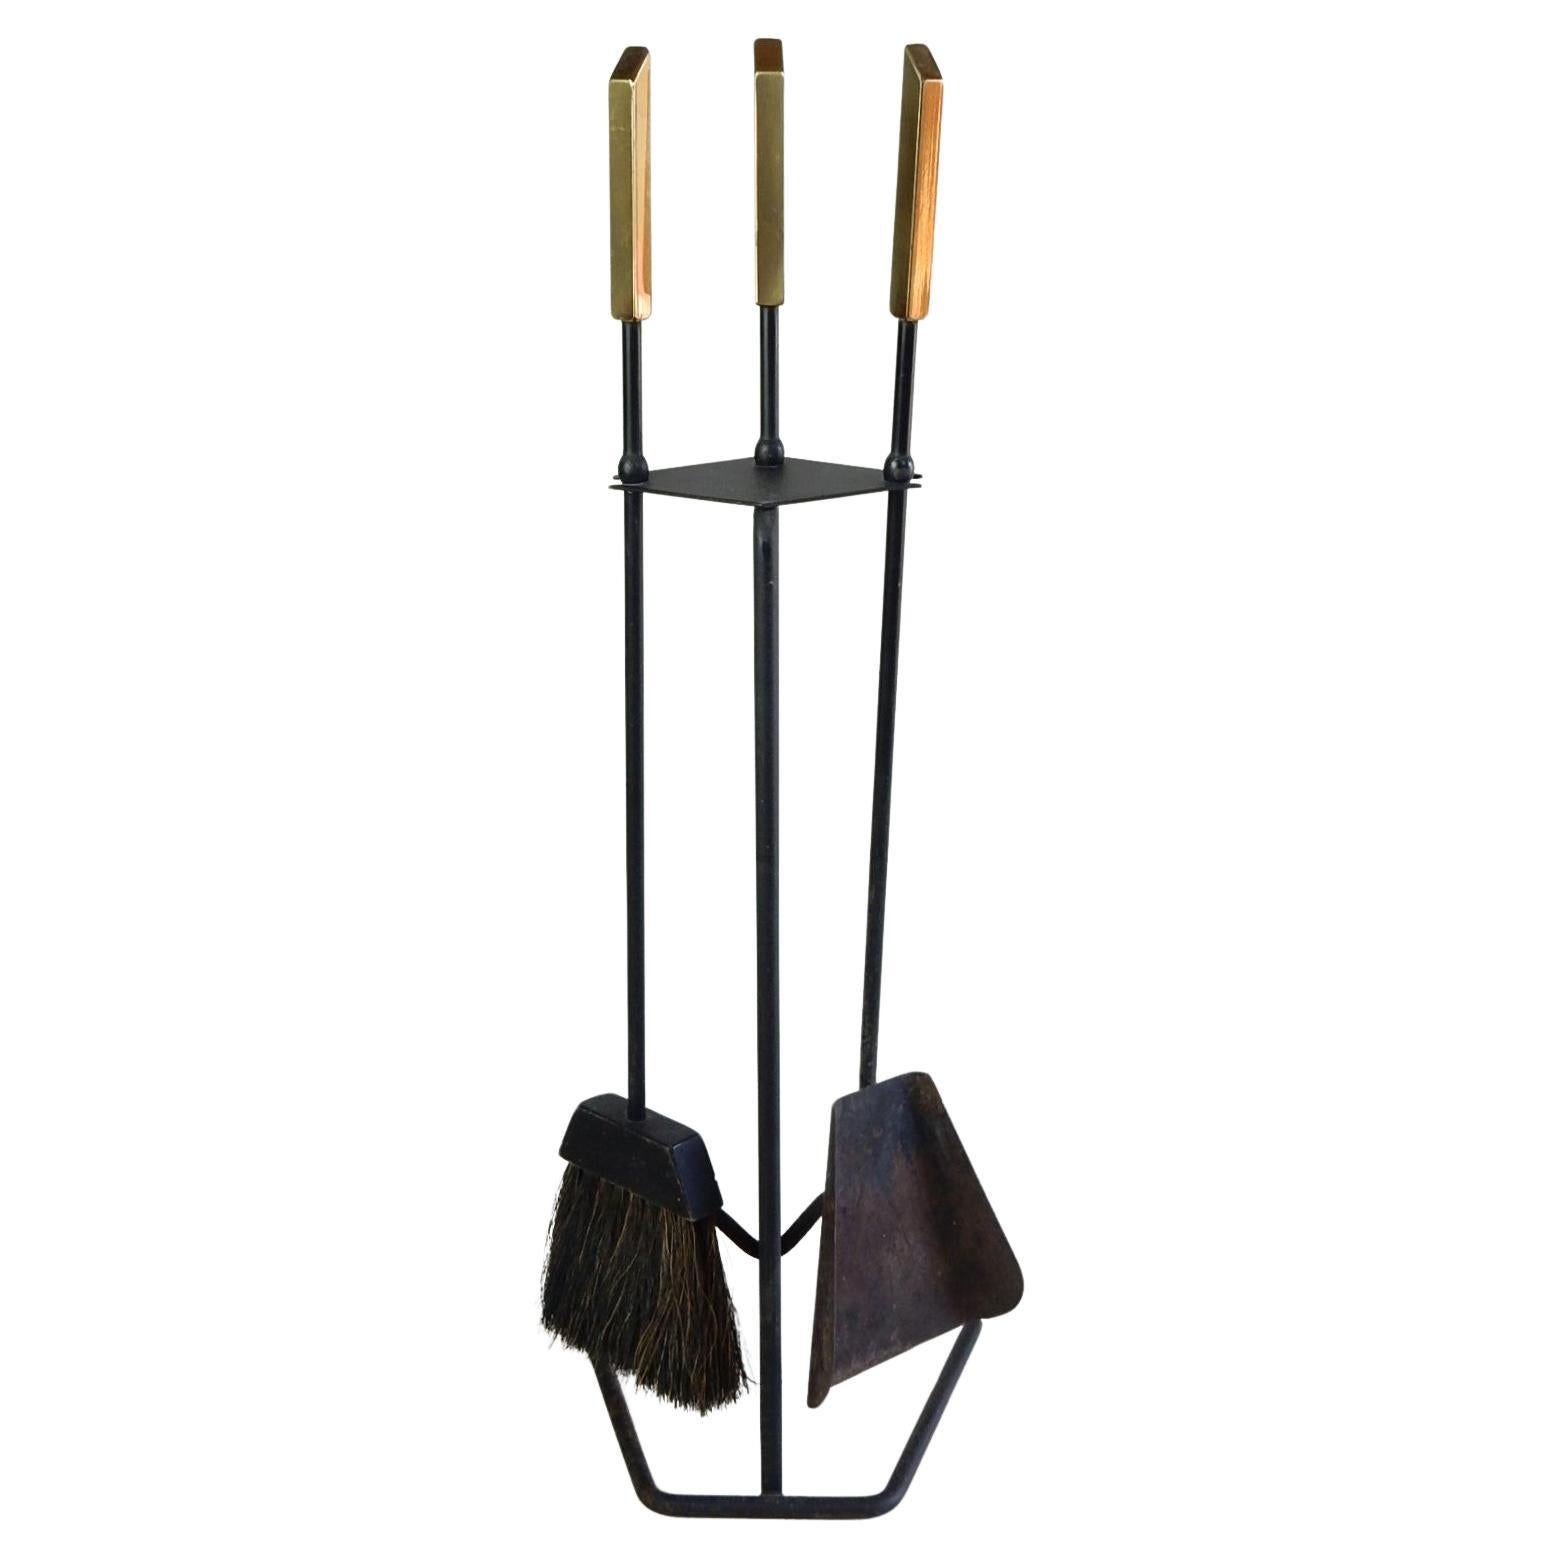 Ensemble d'outils de cheminée en fer noirci et manche en laiton, 3 pièces, datant des années 1960.
Bien réalisé et dans un état d'origine exceptionnel. Balai en crin de cheval Trueing.